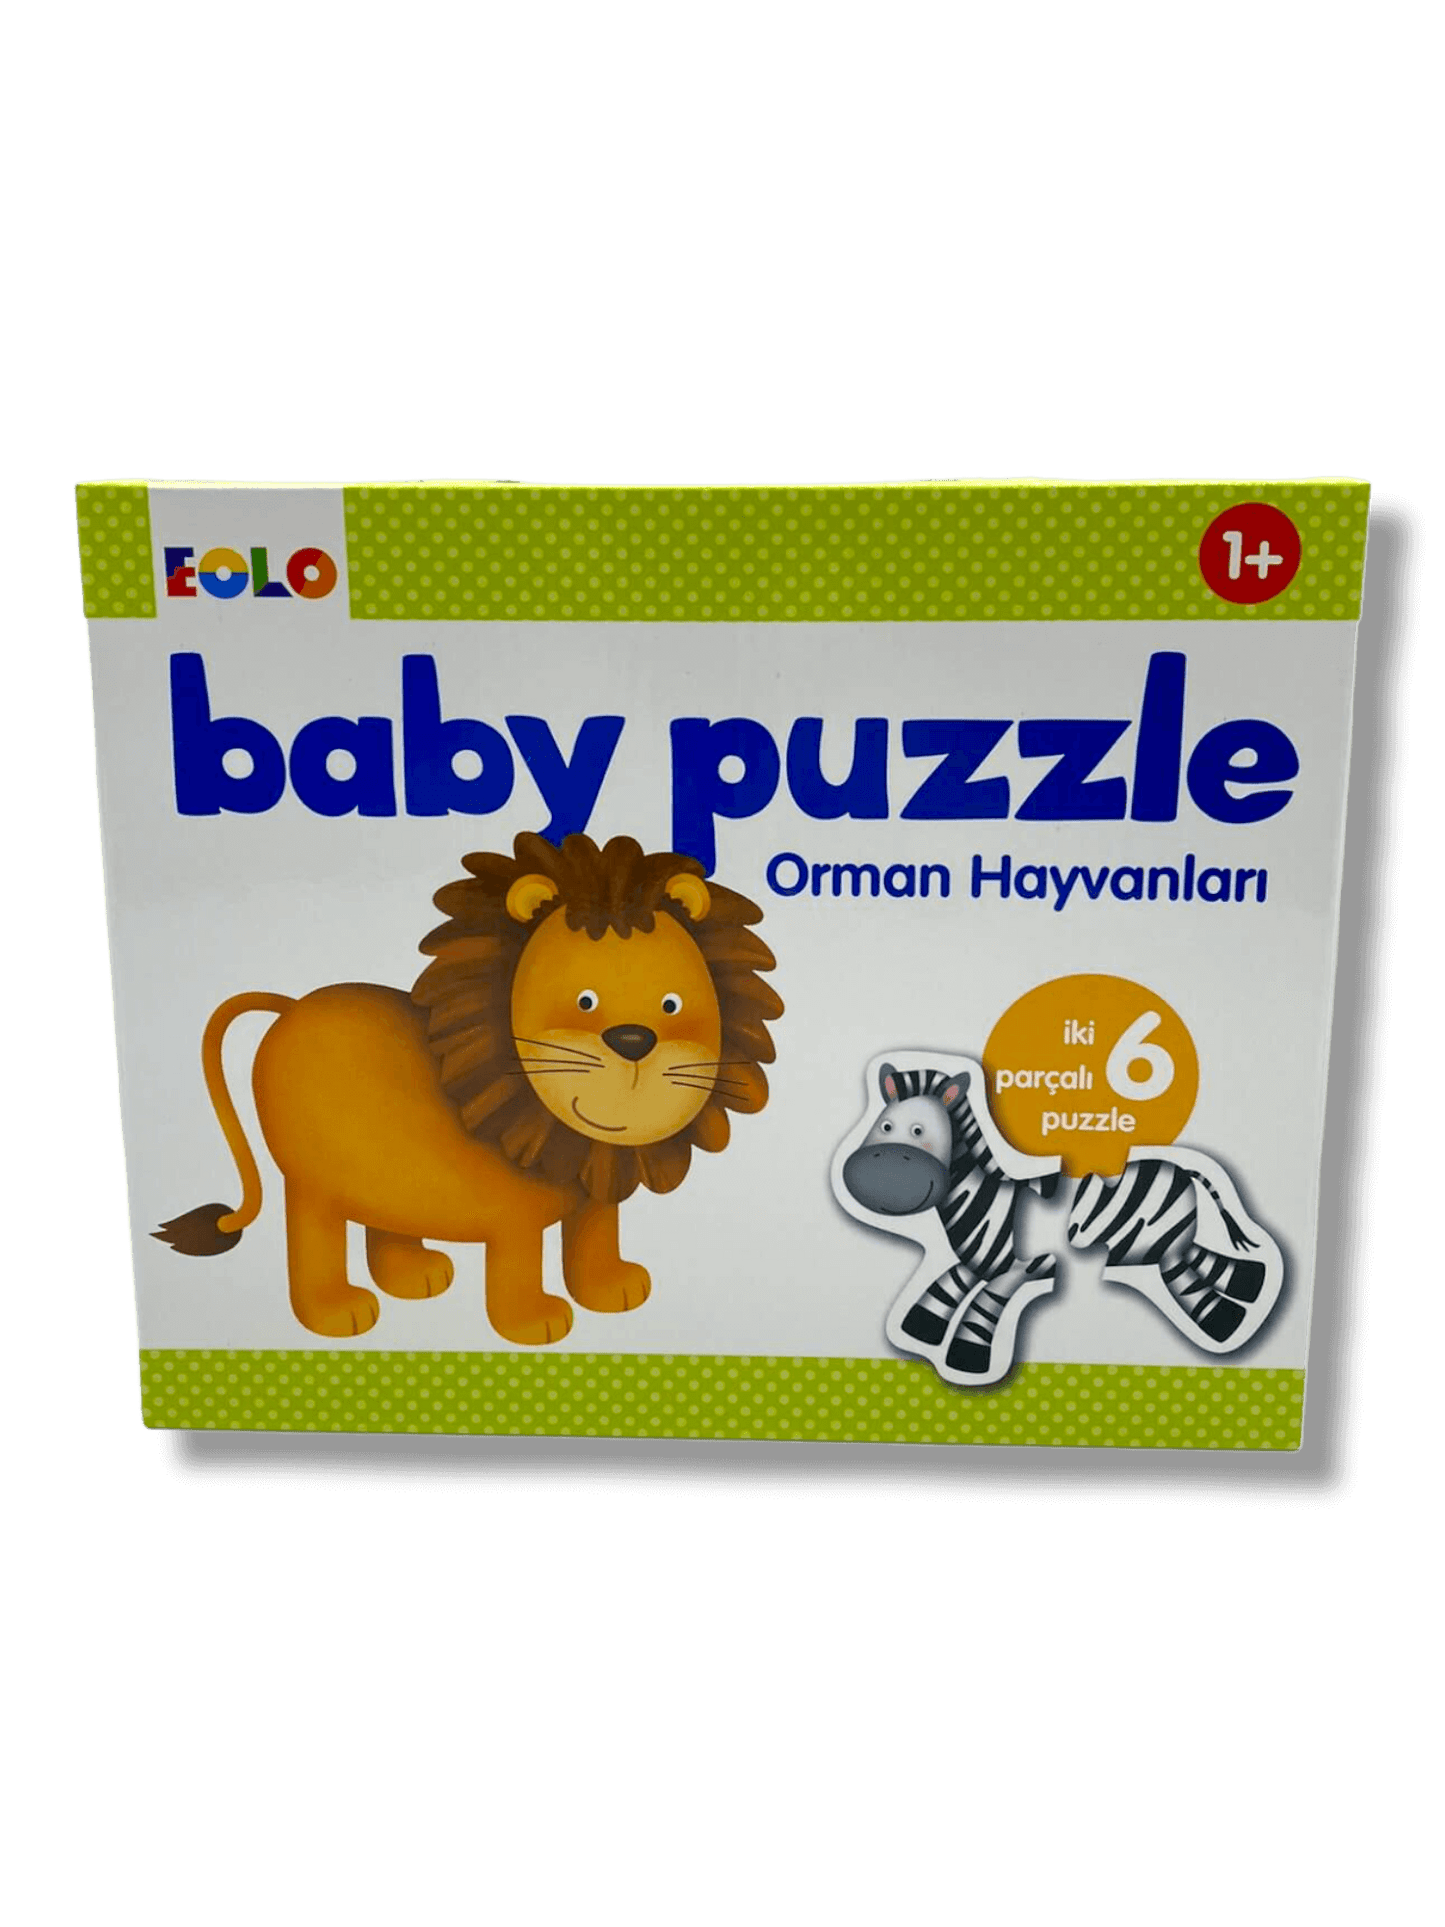 Baby Puzzle - Orman Hayvanları - (Baby Puzzle Wildnis Tiere)